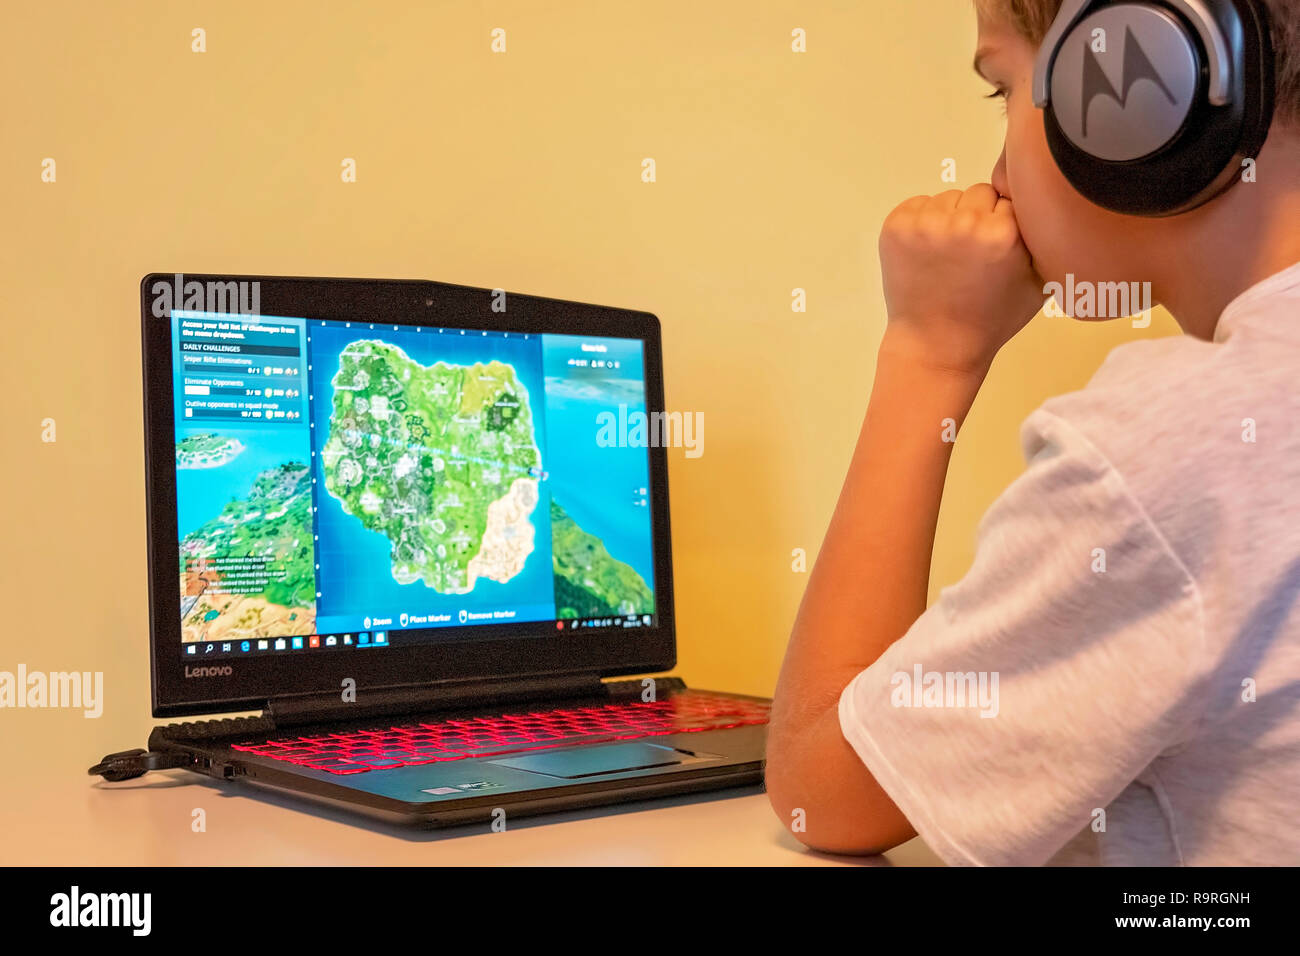 Junge spielt Fortnite. Fortnite ist online video spiel von Epic Games  entwickelt Stockfotografie - Alamy